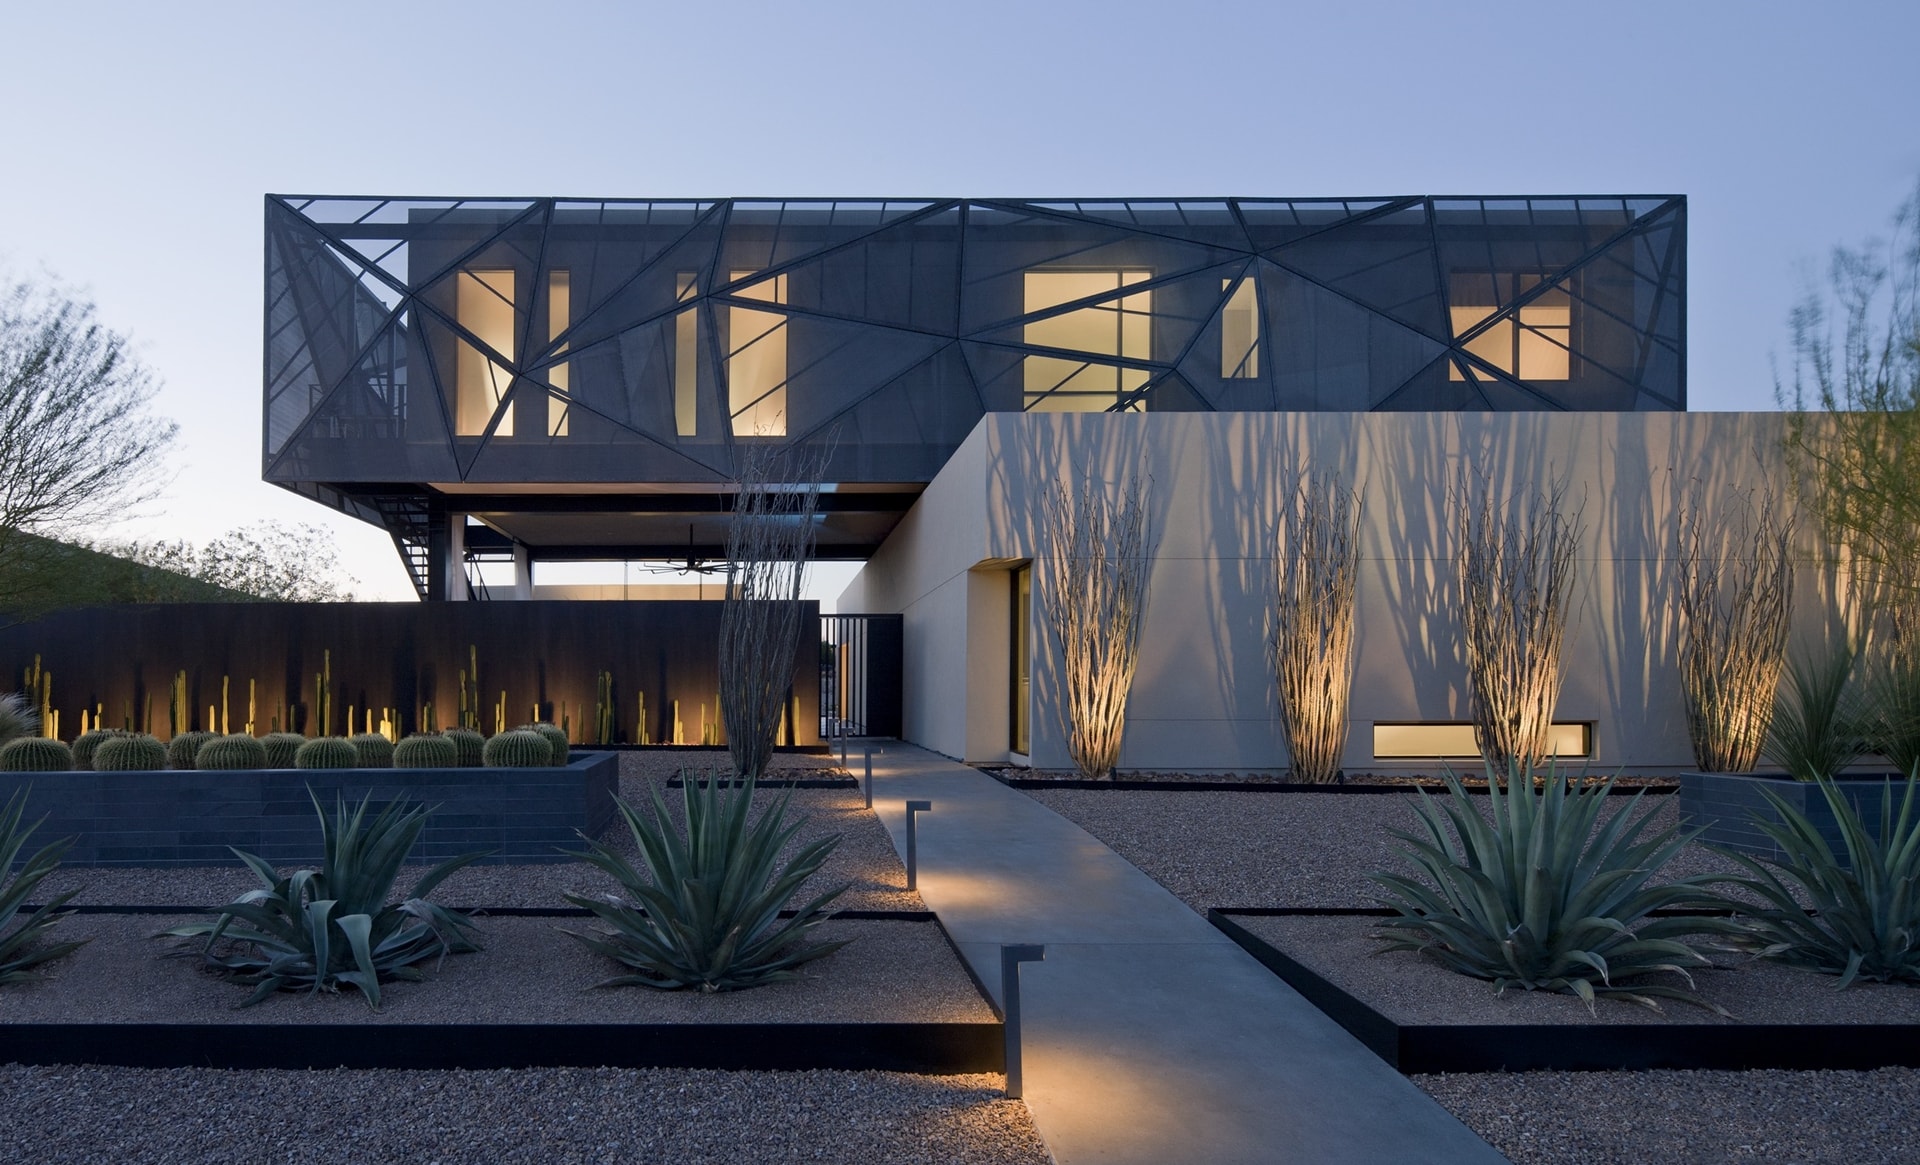  Modern Desert House  Designed For Enjoyable Desert  Living Architecture Beast